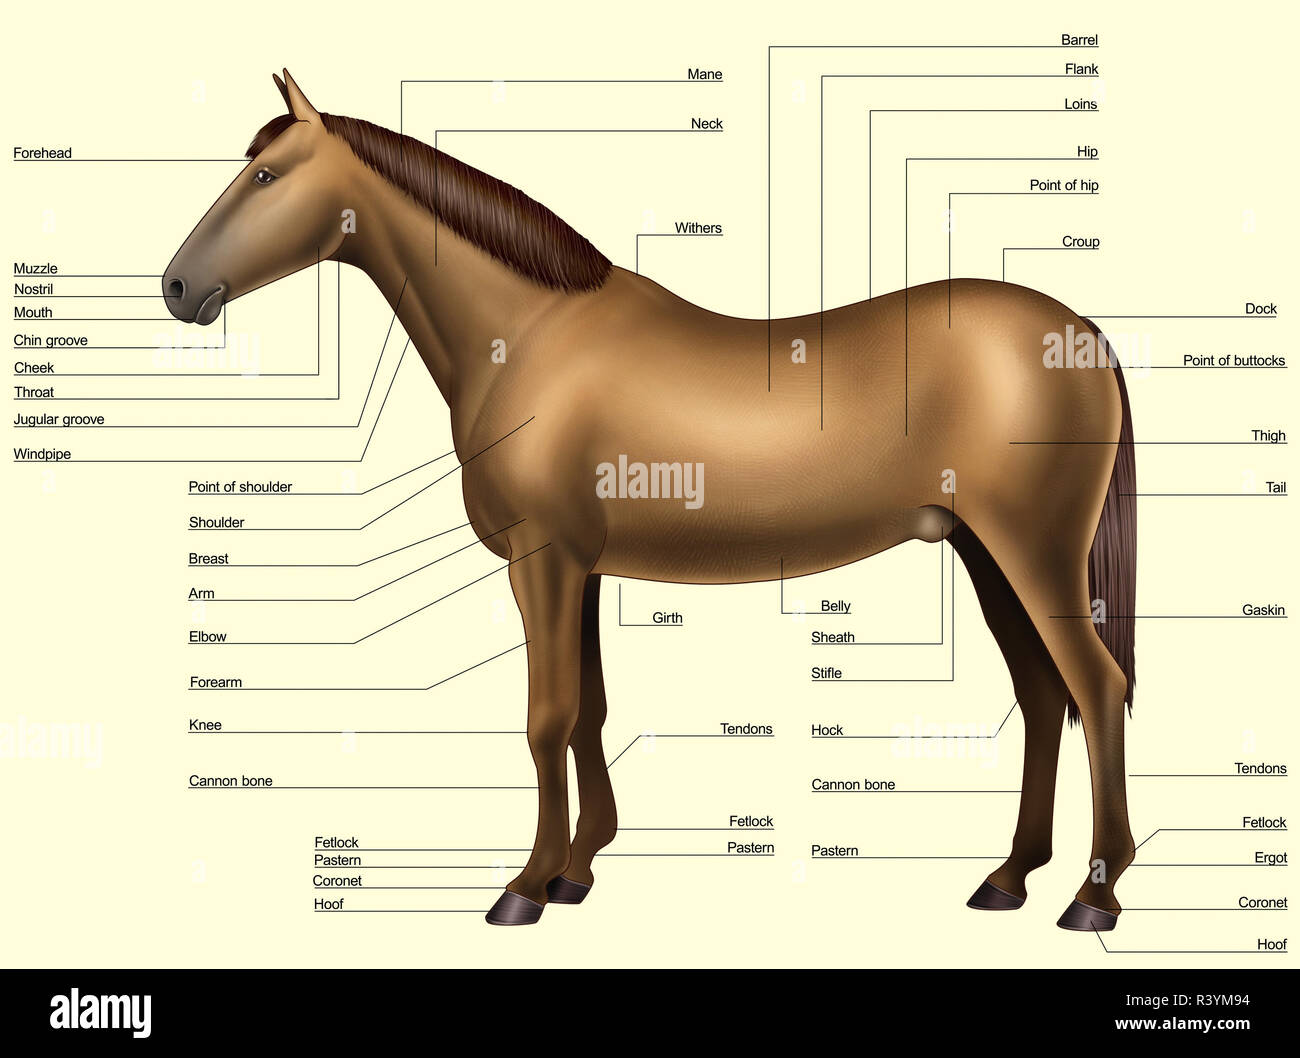 Anatomia del cavallo - le parti del corpo Foto stock - Alamy